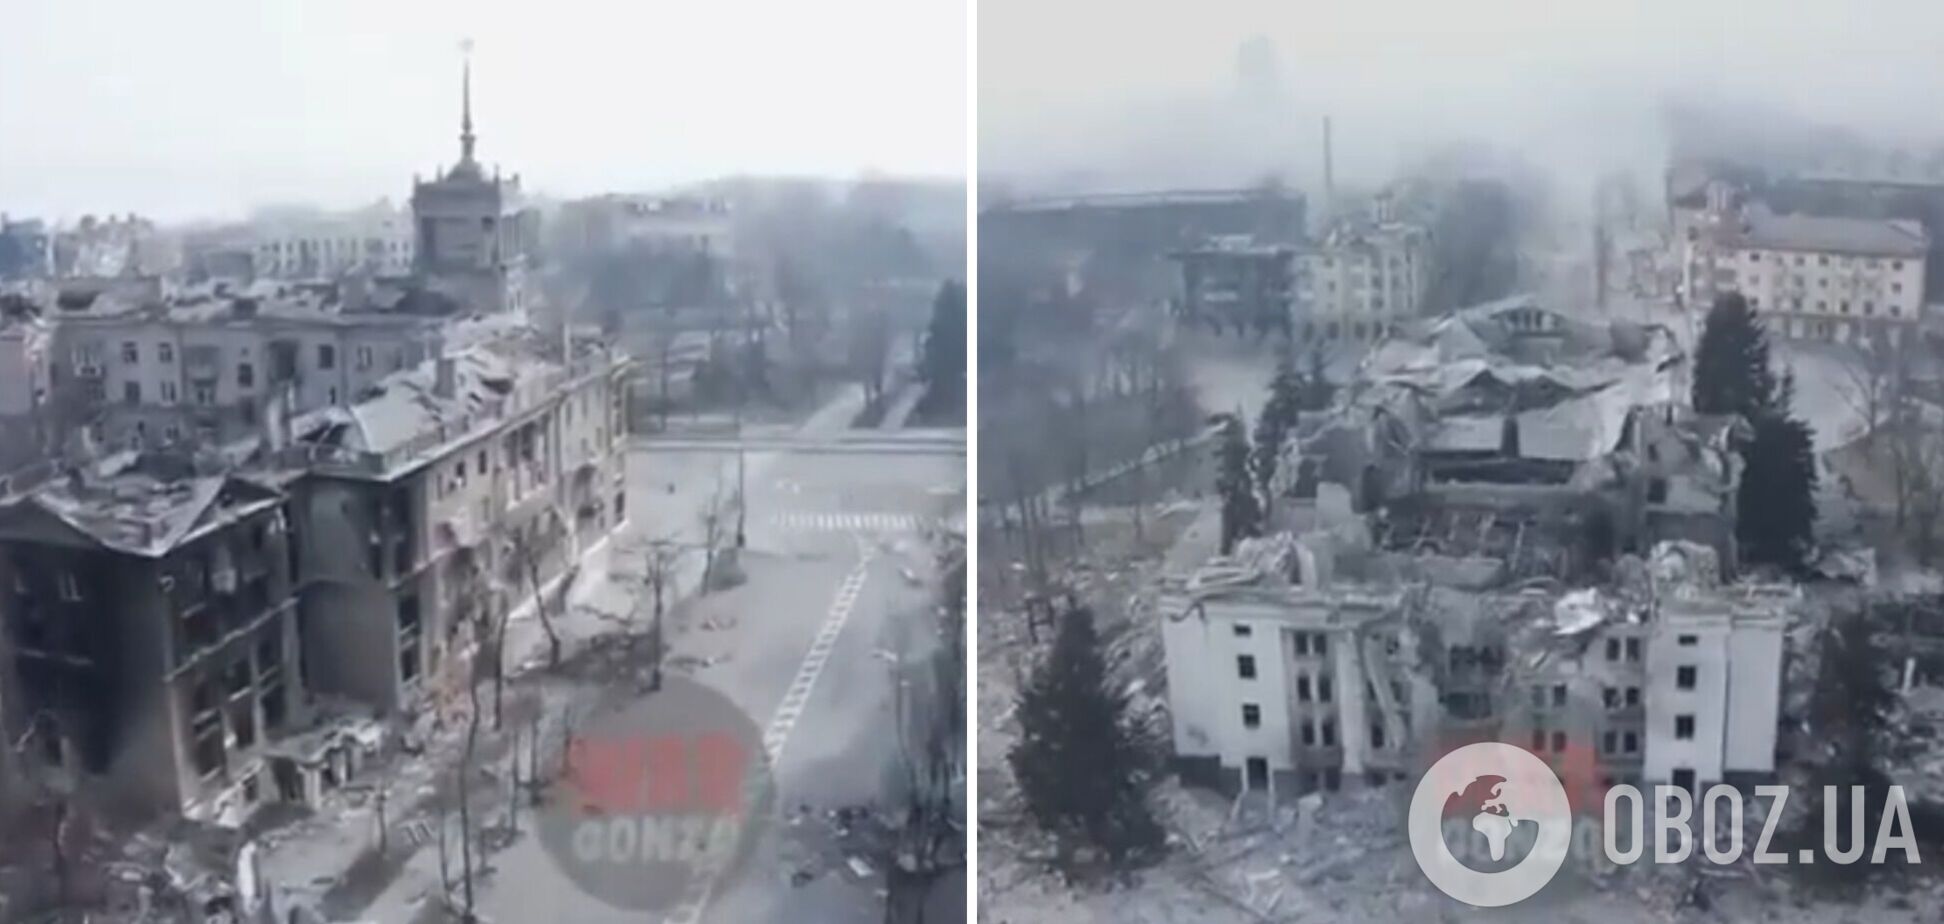 Сплошная разруха и пустые улицы: как выглядит Мариуполь после массированных бомбардировок. Видео с дрона